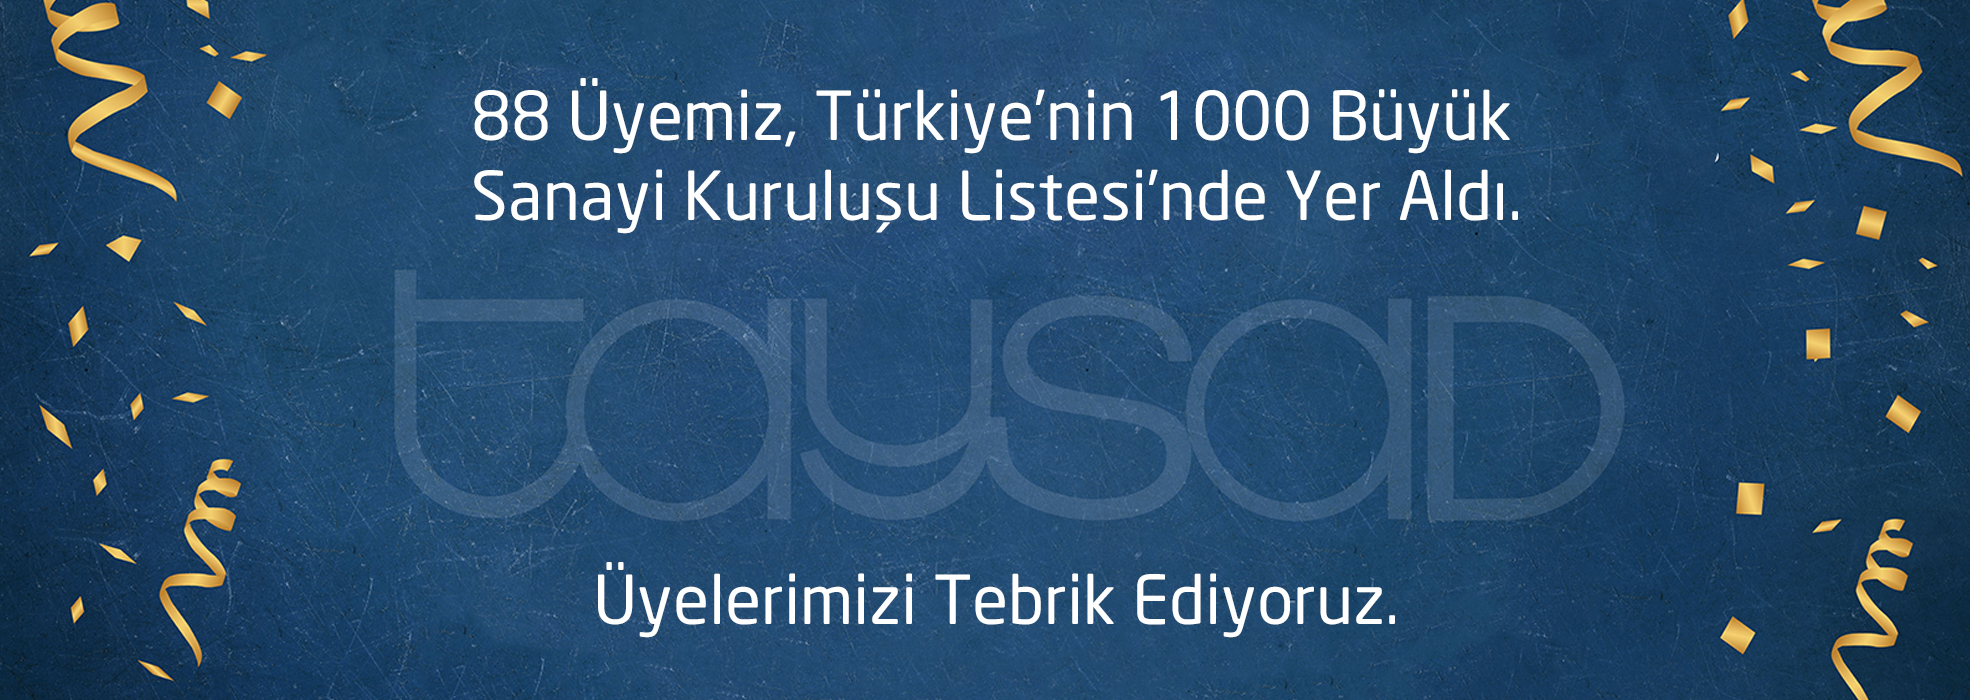 TAYSAD, 88 Üyesiyle Türkiye’nin 1000 Büyük Sanayi Kuruluşu Arasındaki Yerini Aldı!